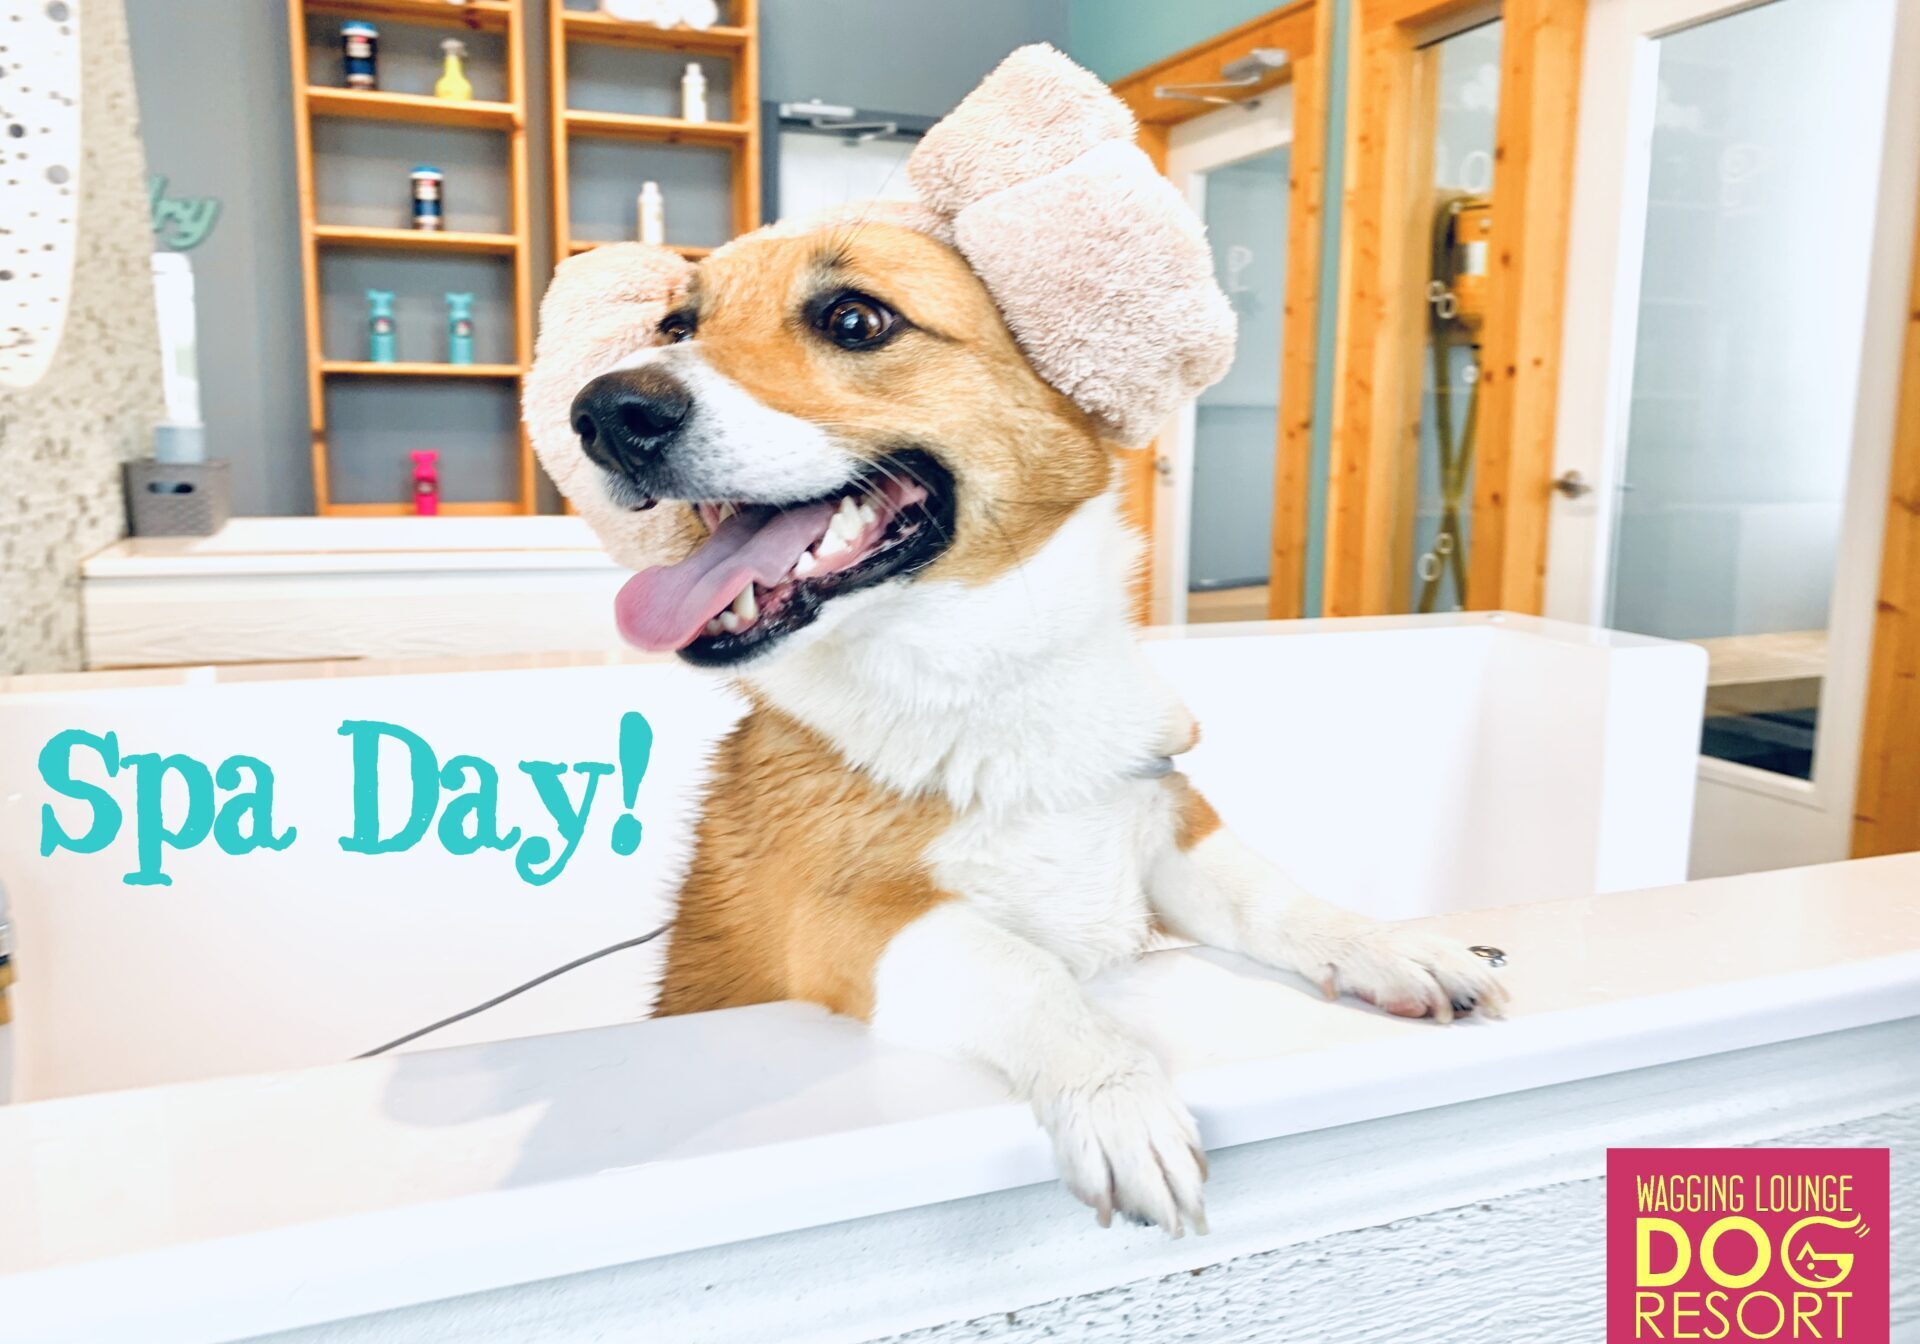 A dog sitting in the bathtub wearing a hat.